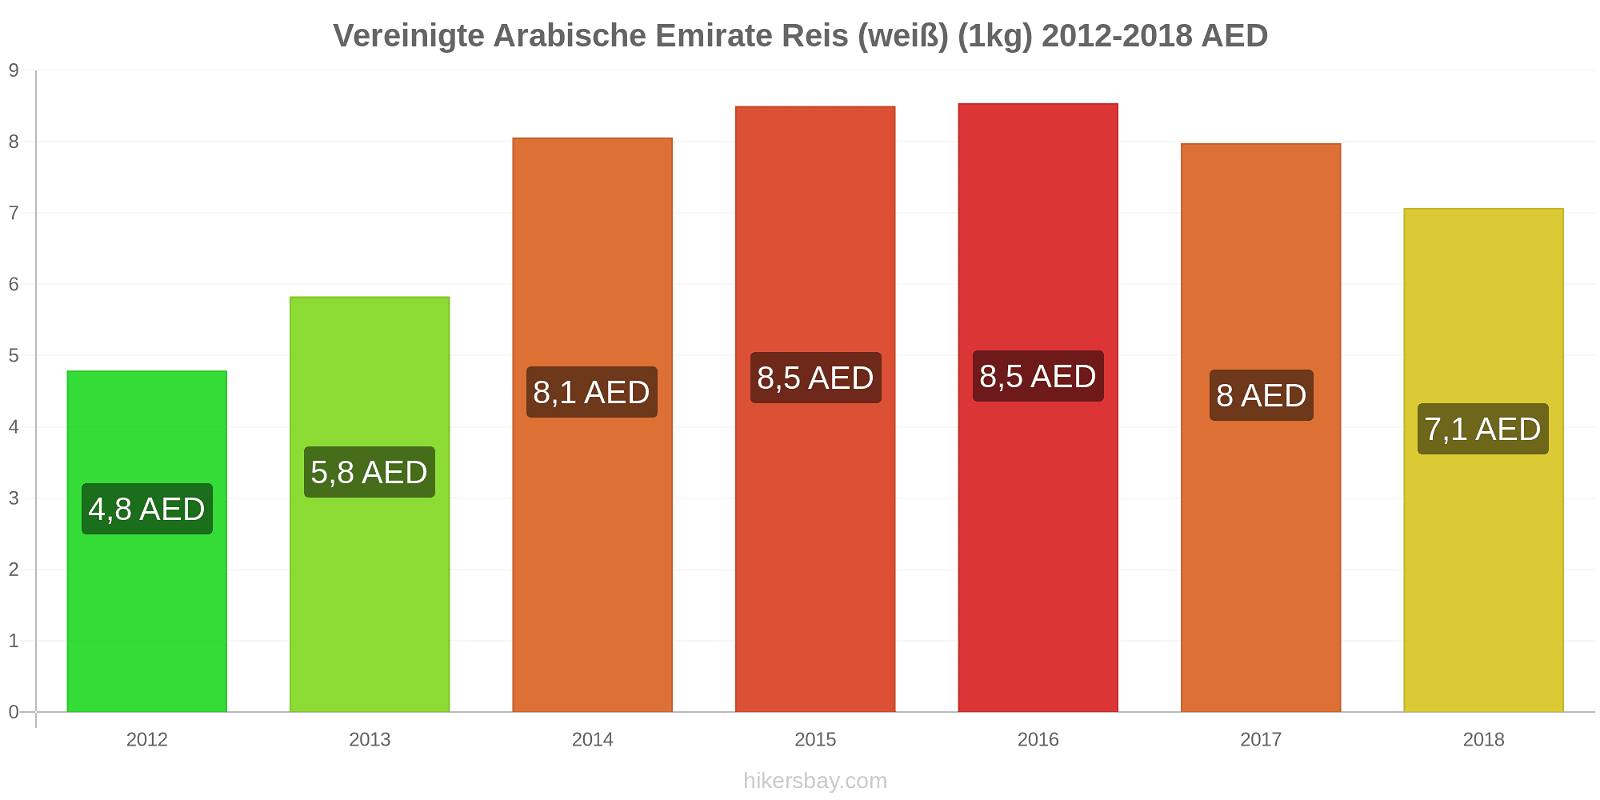 Vereinigte Arabische Emirate Preisänderungen Reis (weiß) (1kg) hikersbay.com